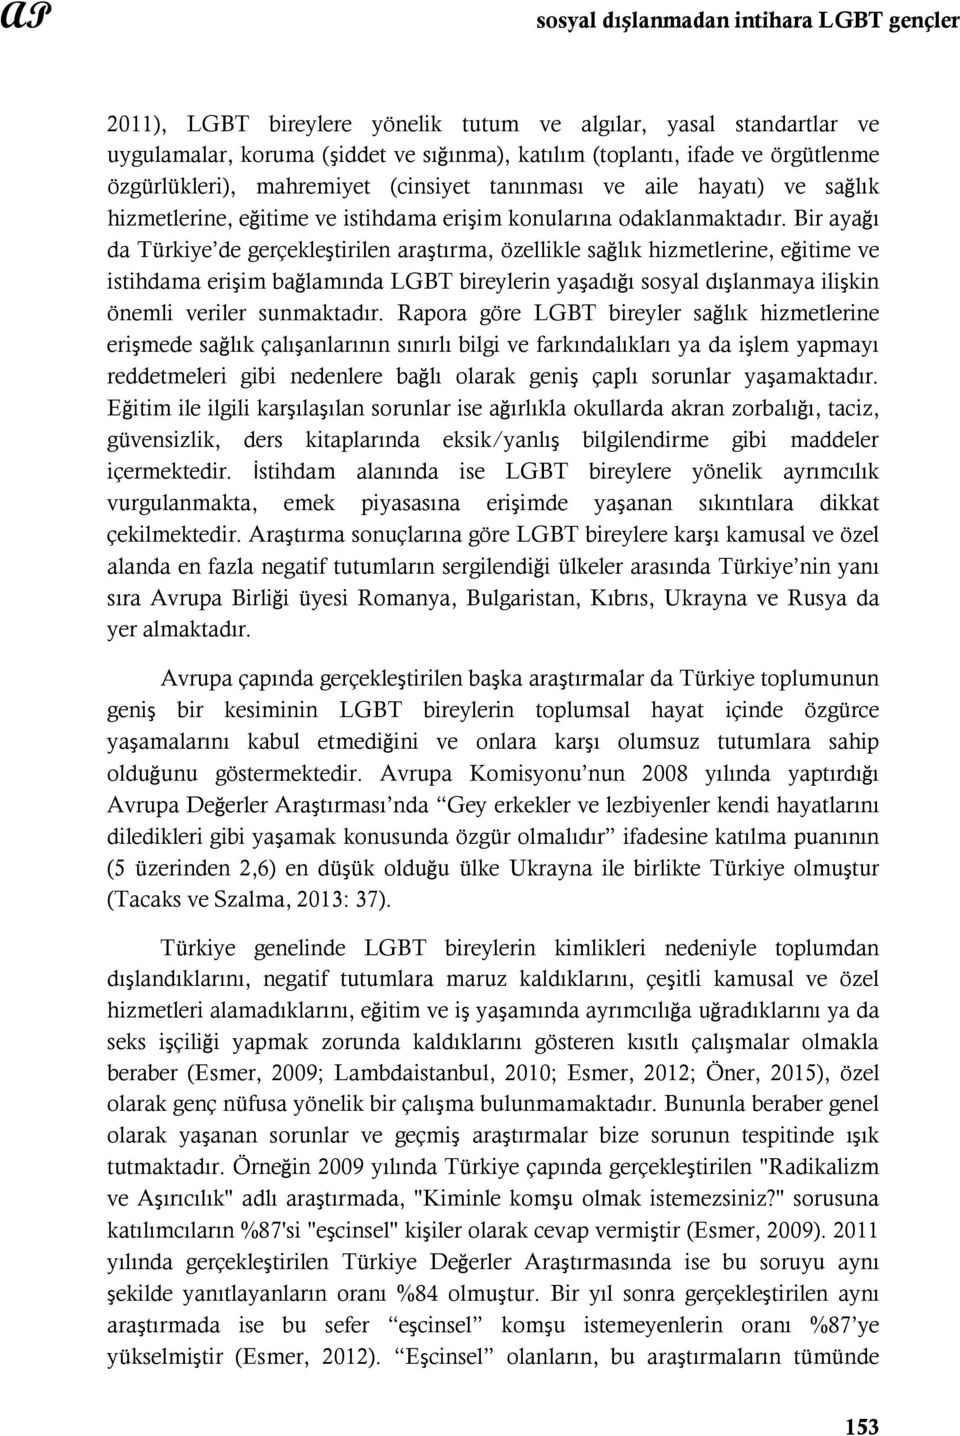 Bir ayağı da Türkiye de gerçekleştirilen araştırma, özellikle sağlık hizmetlerine, eğitime ve istihdama erişim bağlamında LGBT bireylerin yaşadığı sosyal dışlanmaya ilişkin önemli veriler sunmaktadır.